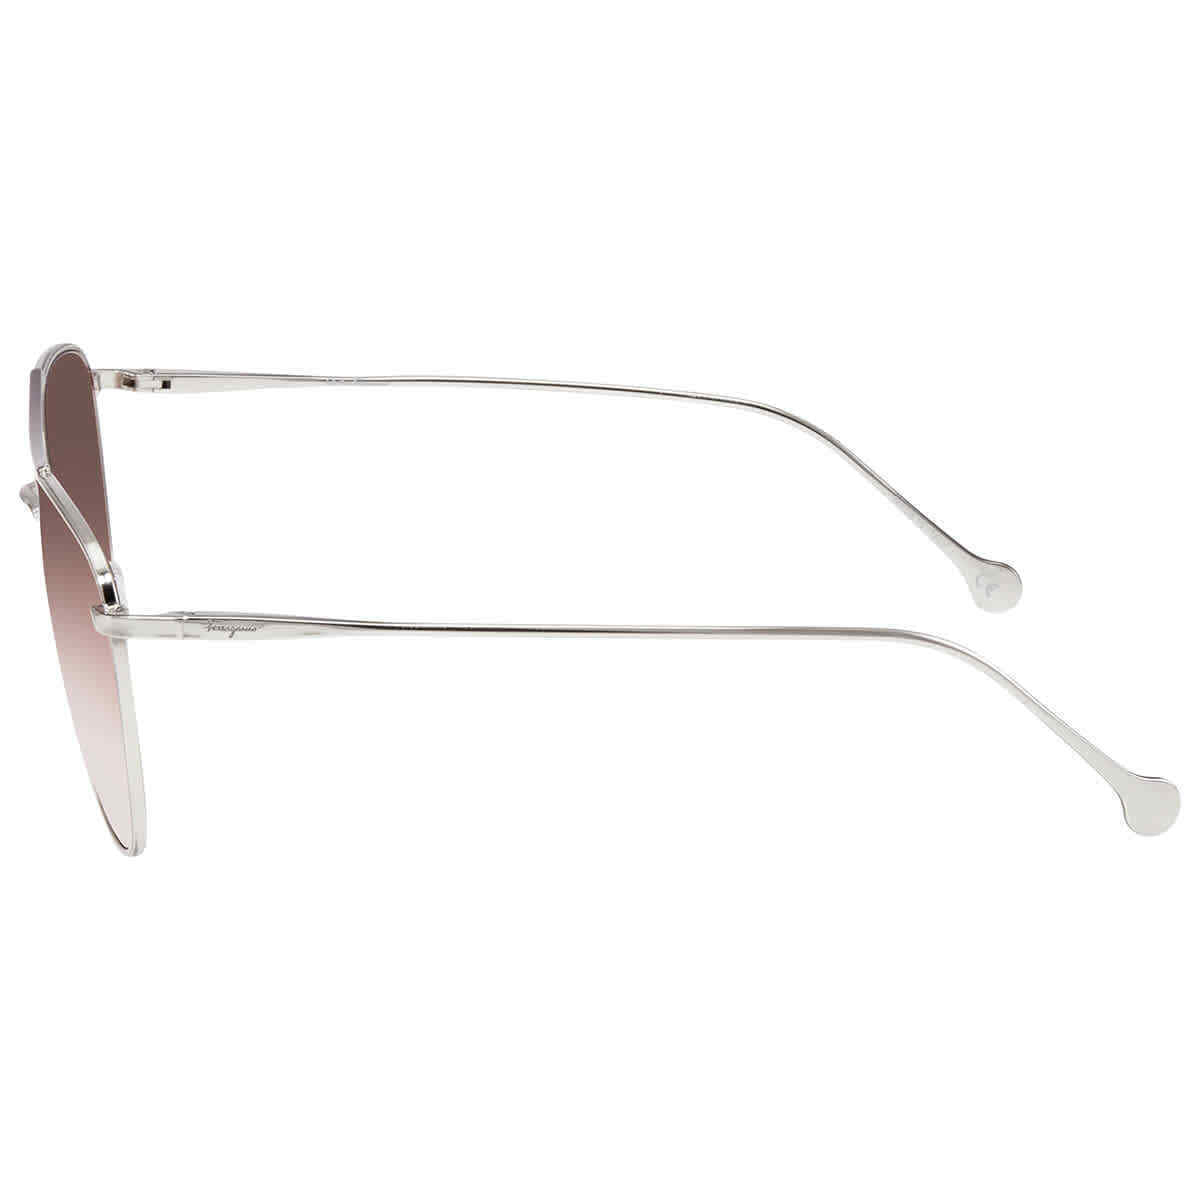 Salvatore Ferragamo SF2177-717 56mm New Sunglasses